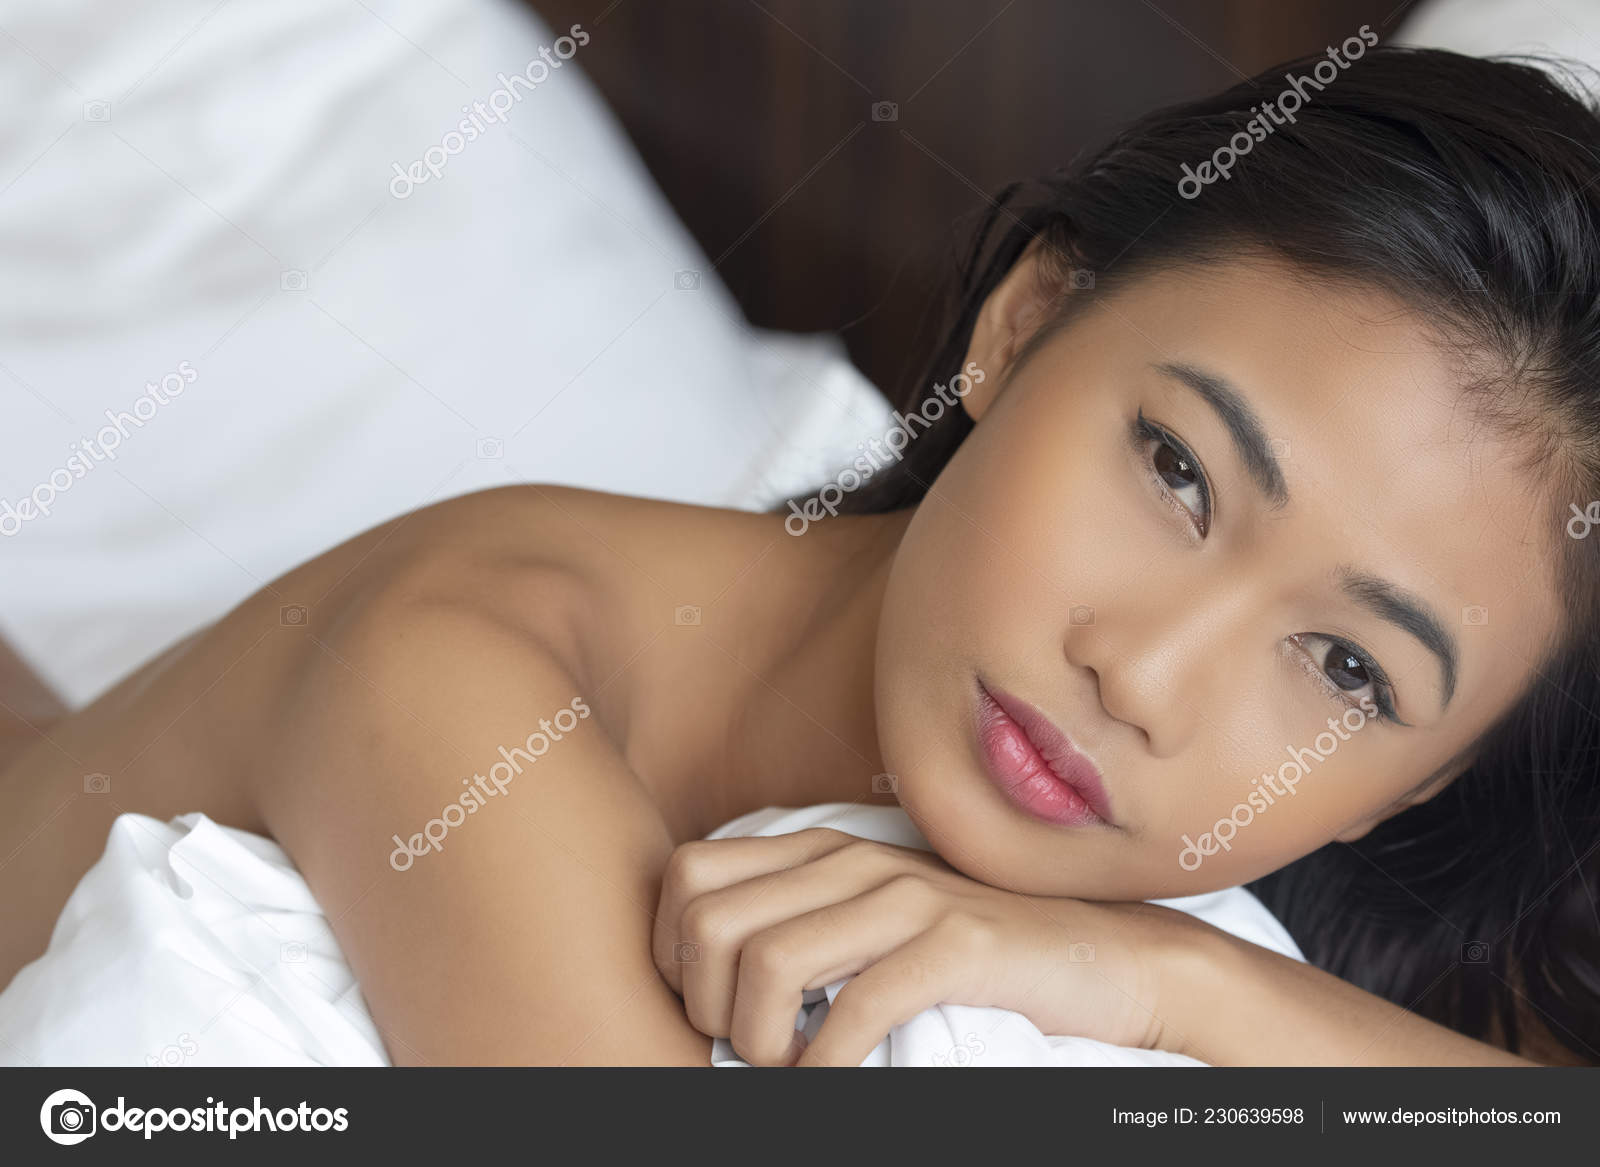 Gorgeous Nude Asian Women white cocks